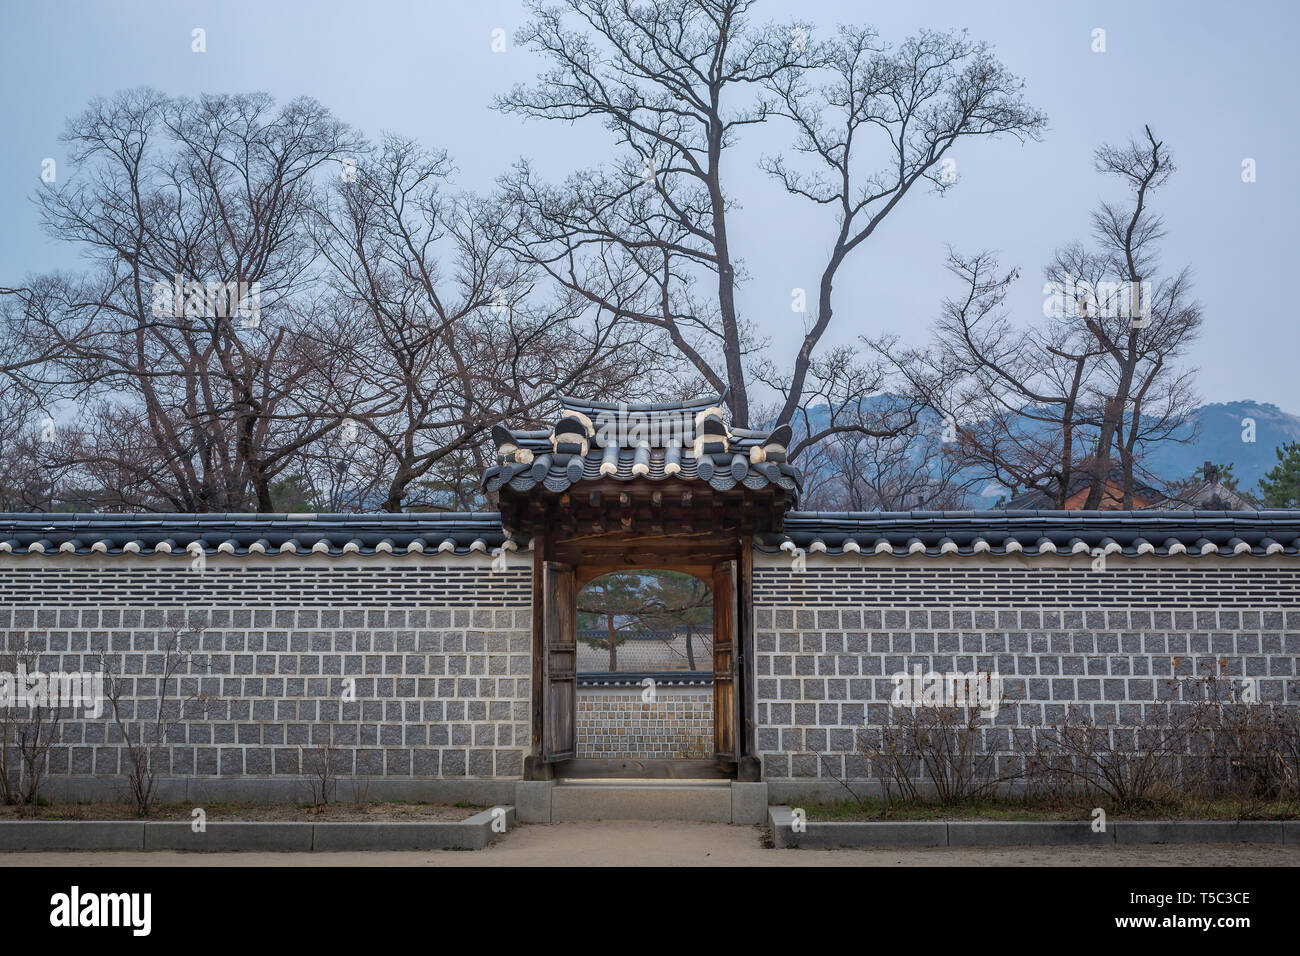 La tradizionale struttura di parete della Corea nel periodo invernale. Foto Stock